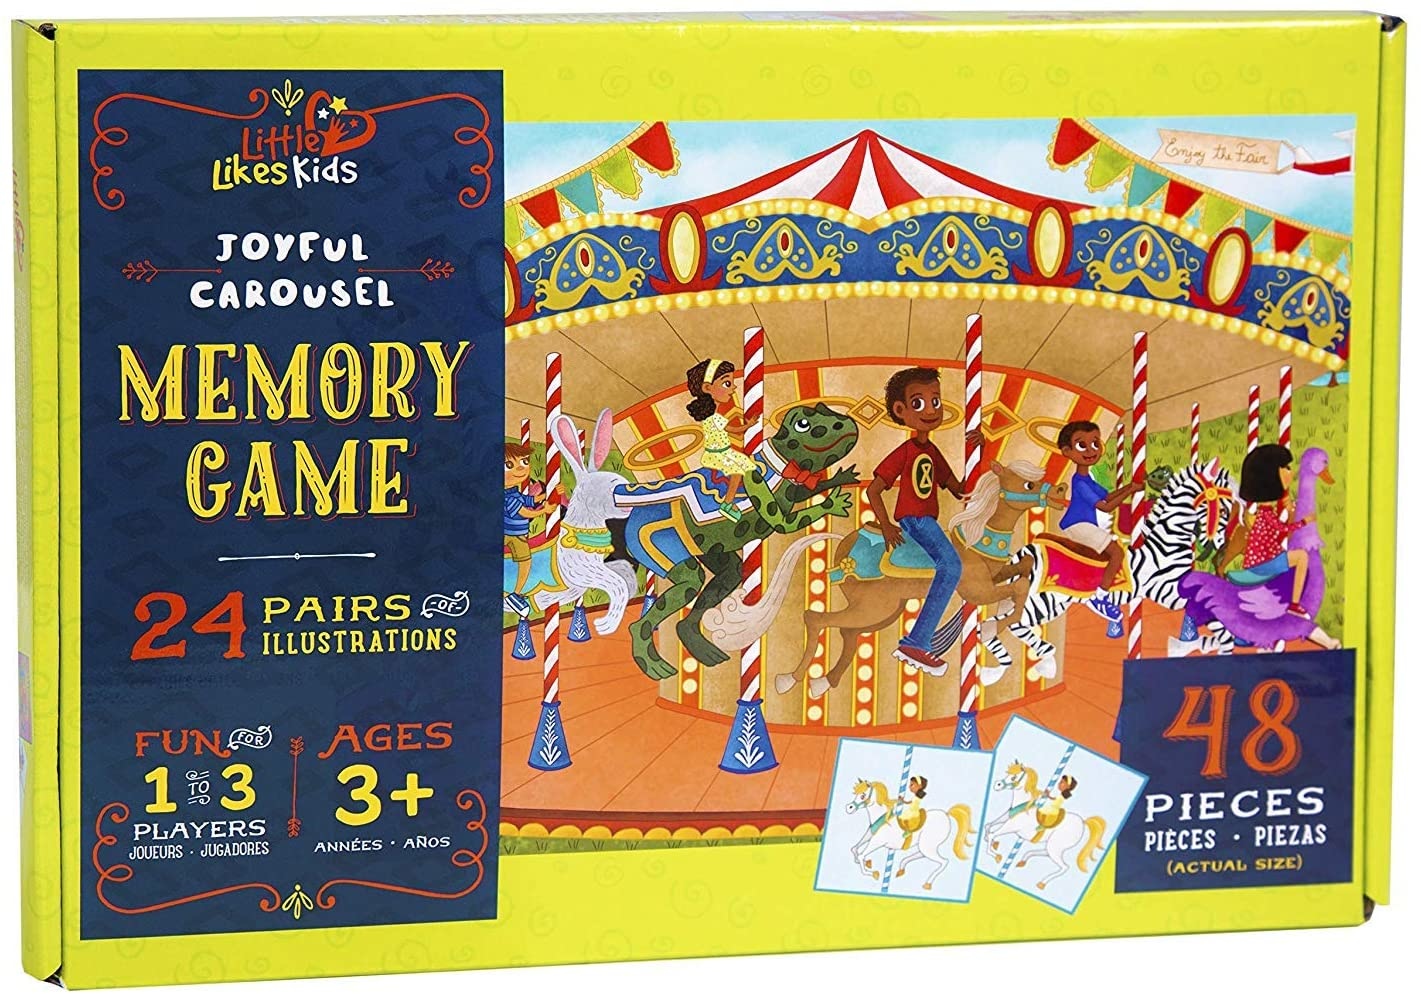 Little Likes Kids Joyful Carousel Memory Game